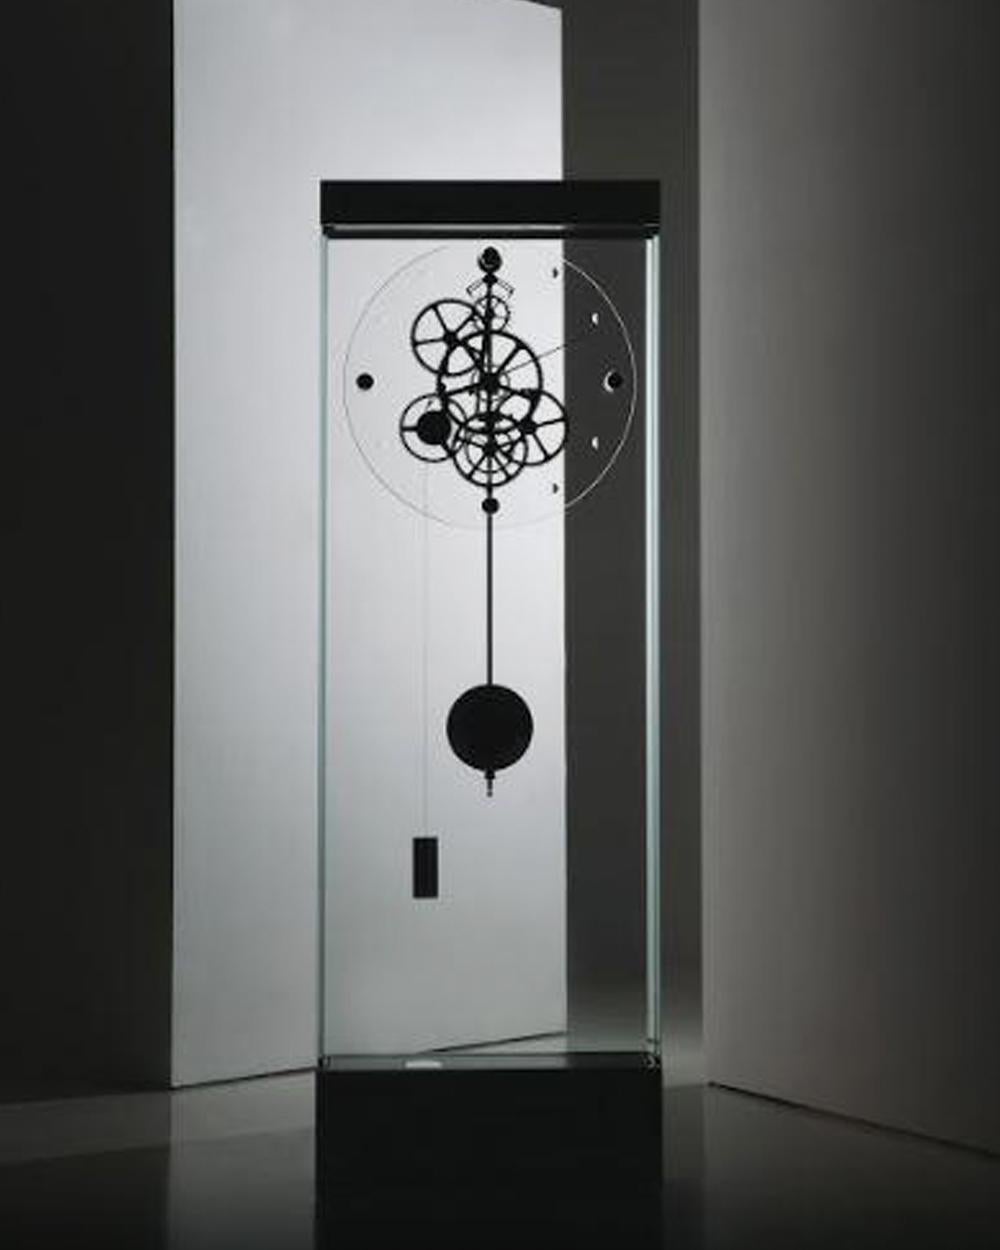 La pendule Adagio, conçue par Gianfranco Barban pour Teckell, fait partie de la collection Takto. La structure en verre de cristal clair de cet élégant garde-temps permet de voir à l'intérieur le magnifique mécanisme d'échappement Graham. La tige du